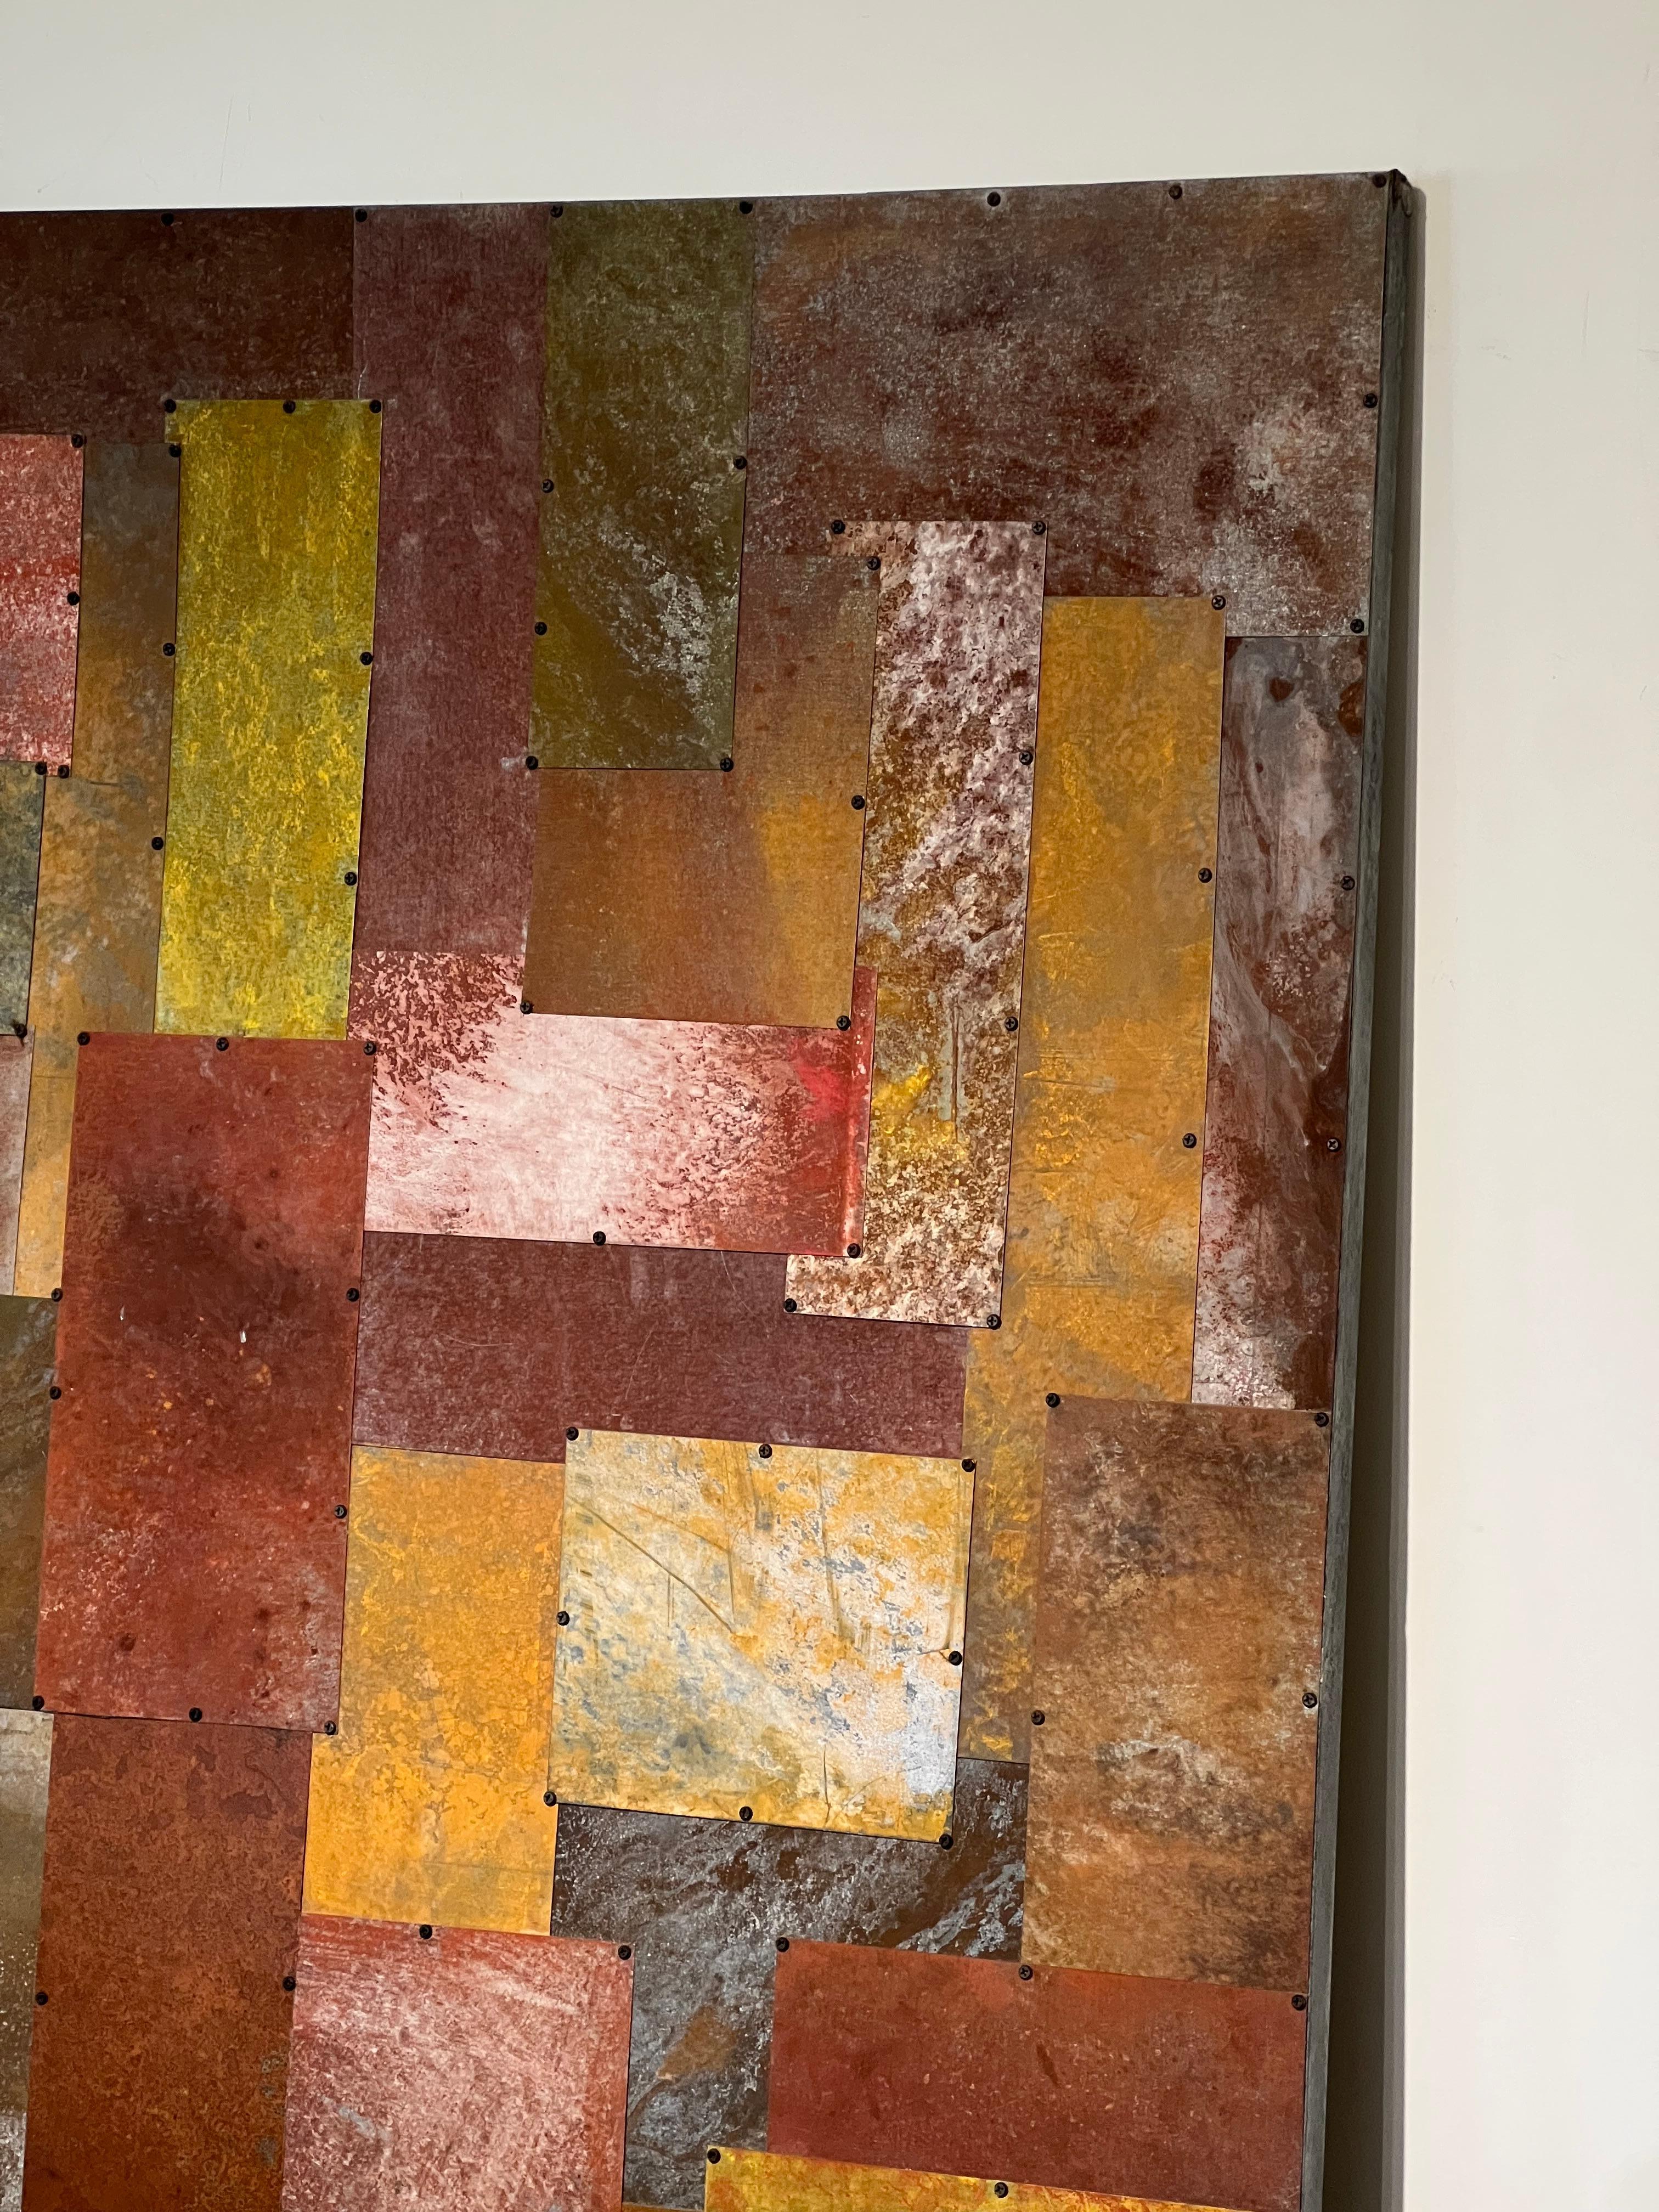 Nathan Steele Joseph explore les possibilités picturales de l'acier dans un ensemble d'œuvres qui fusionnent la sculpture viscérale avec une palette nuancée de pigments inorganiques. Inspiré par ses confrères new-yorkais Carl Andre, Frank Stella et